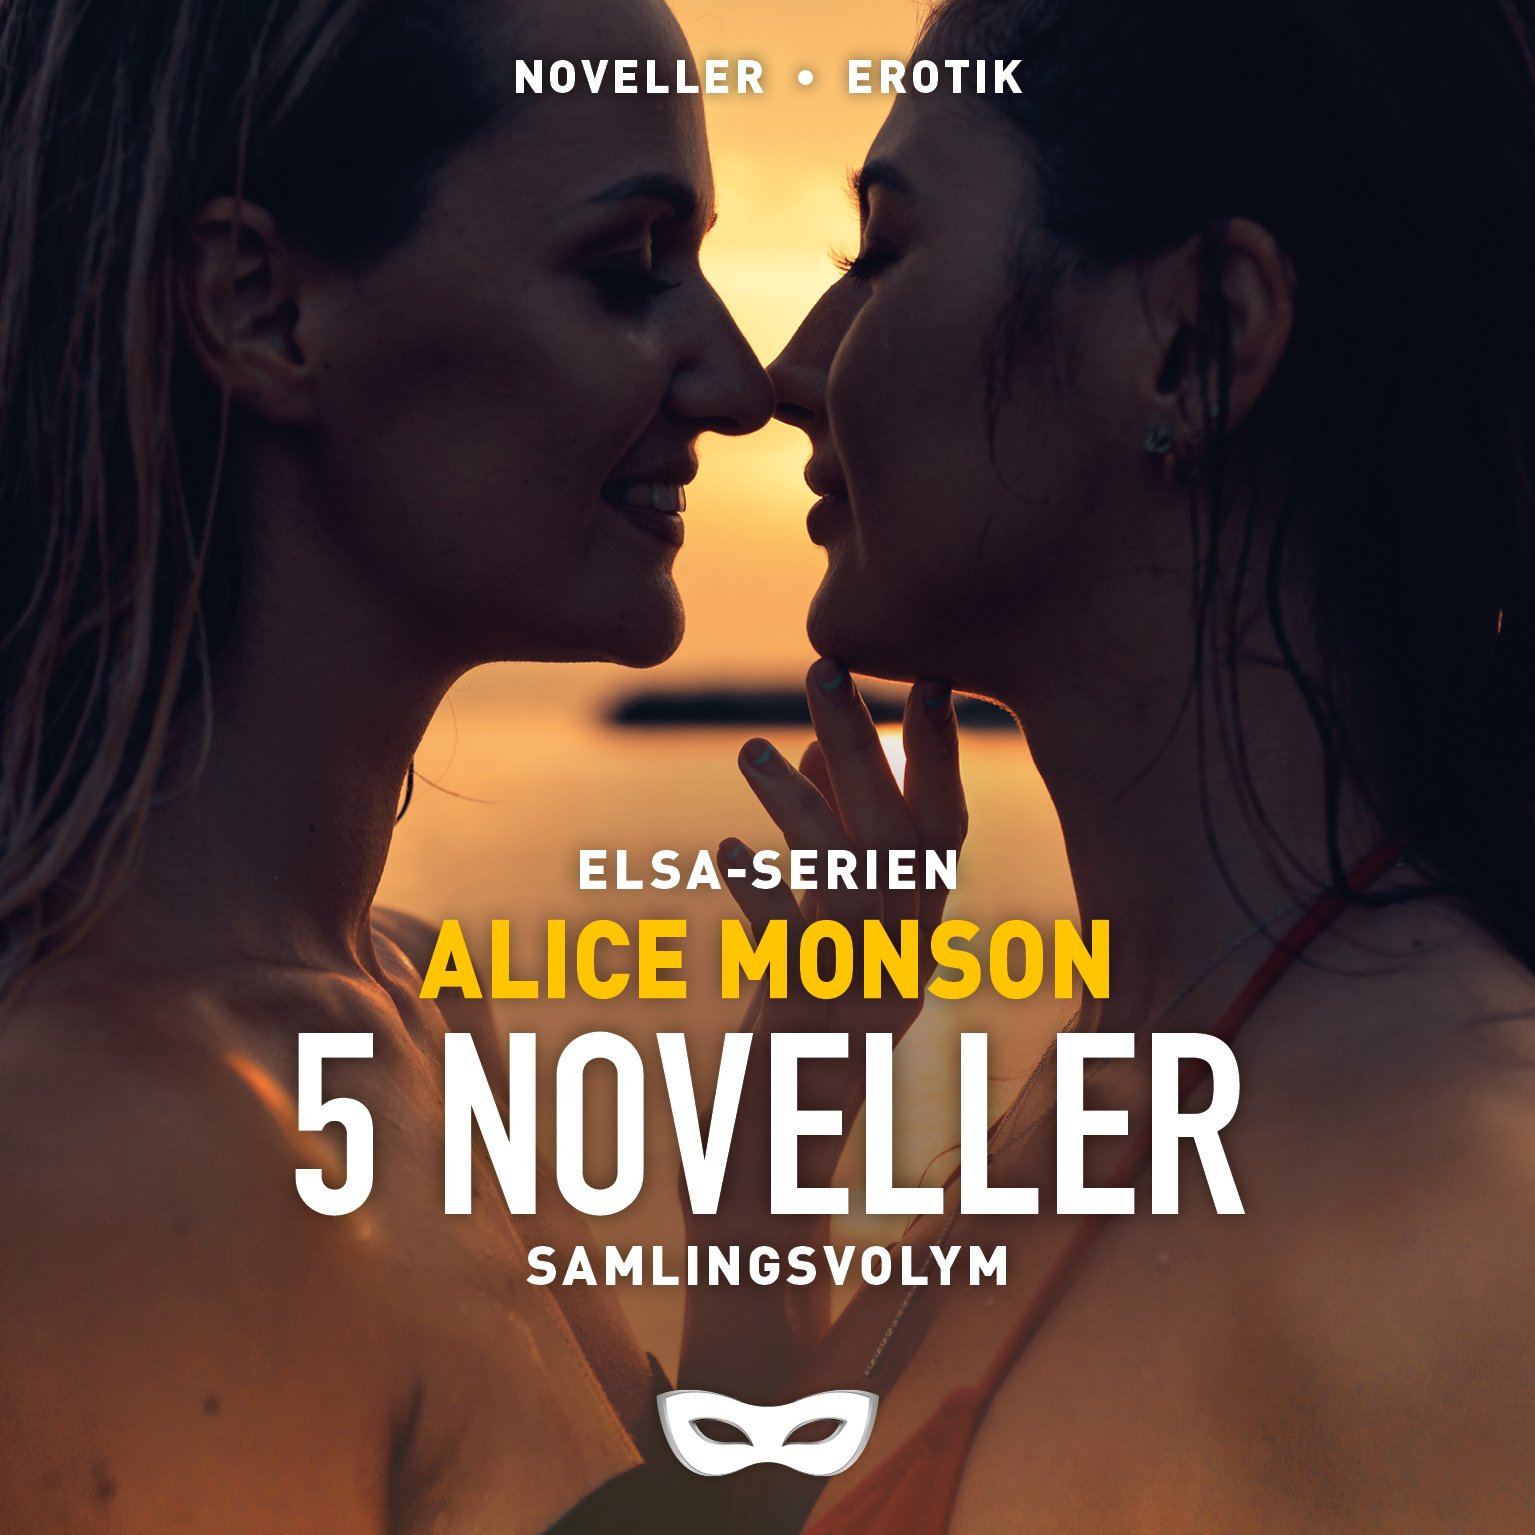 MONSAM Alice Monson Elsa-serien 5 noveller samlingsvolym omslag audio.jpg